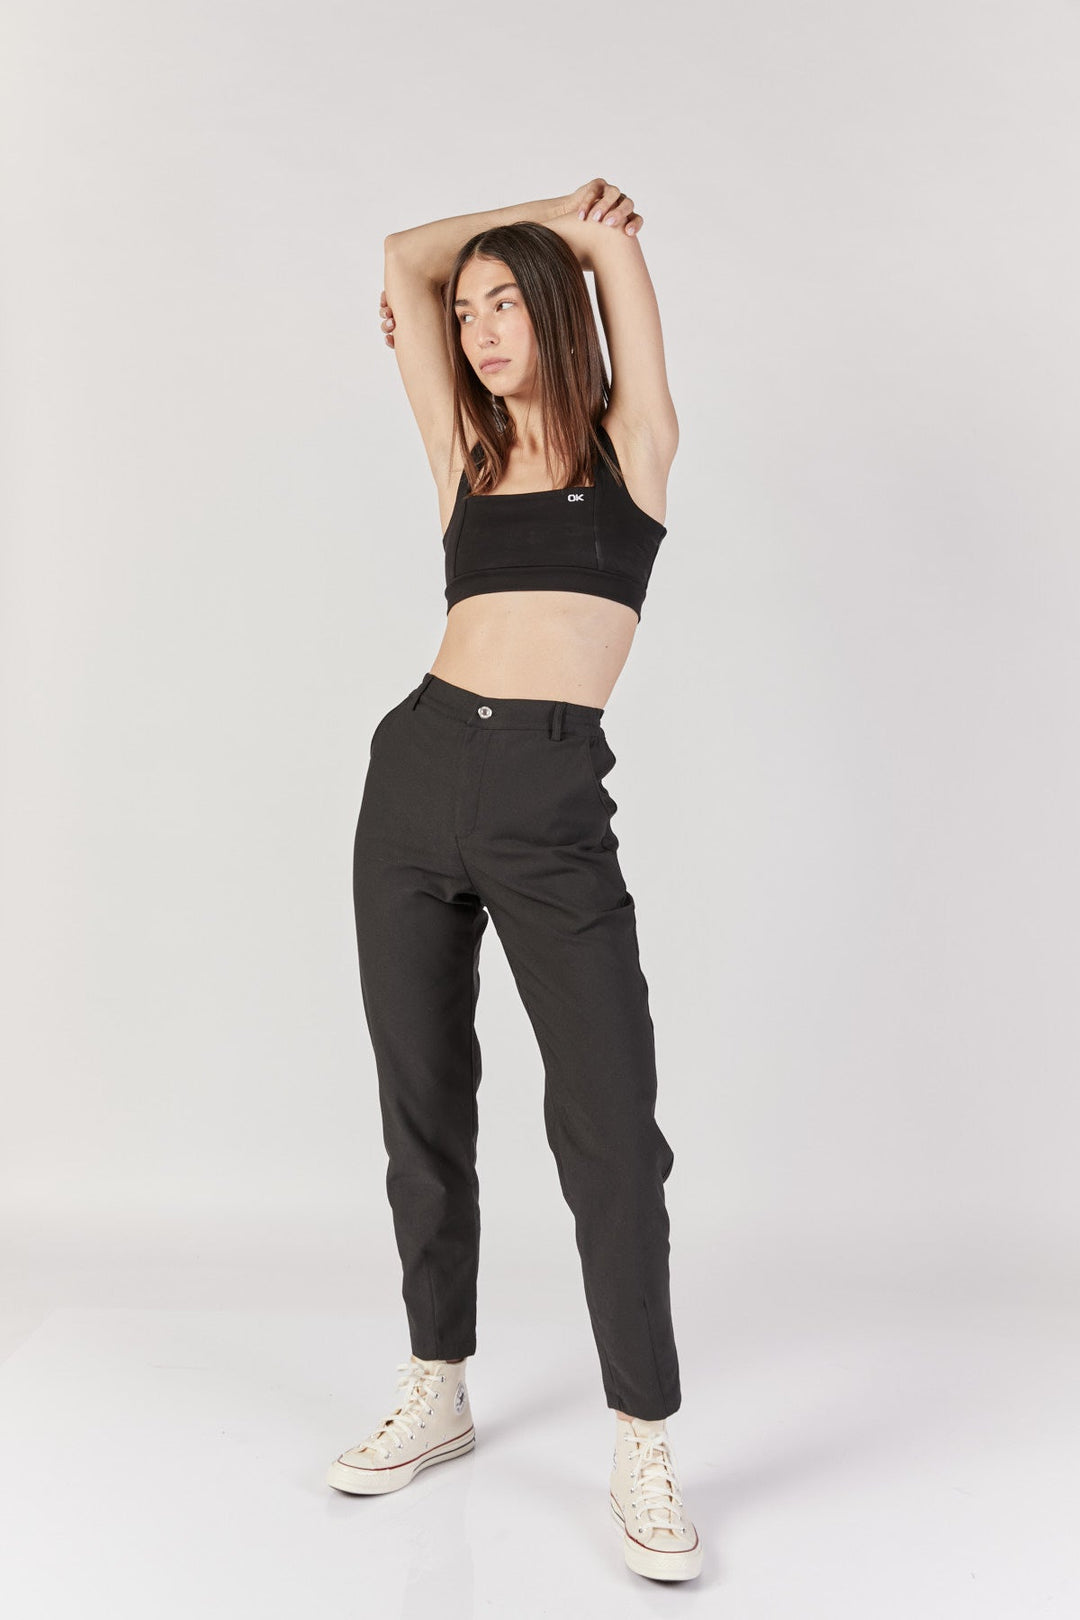 מכנסיים גבוהים פיקסל לוגו בצבע שחור - Kesh Limited